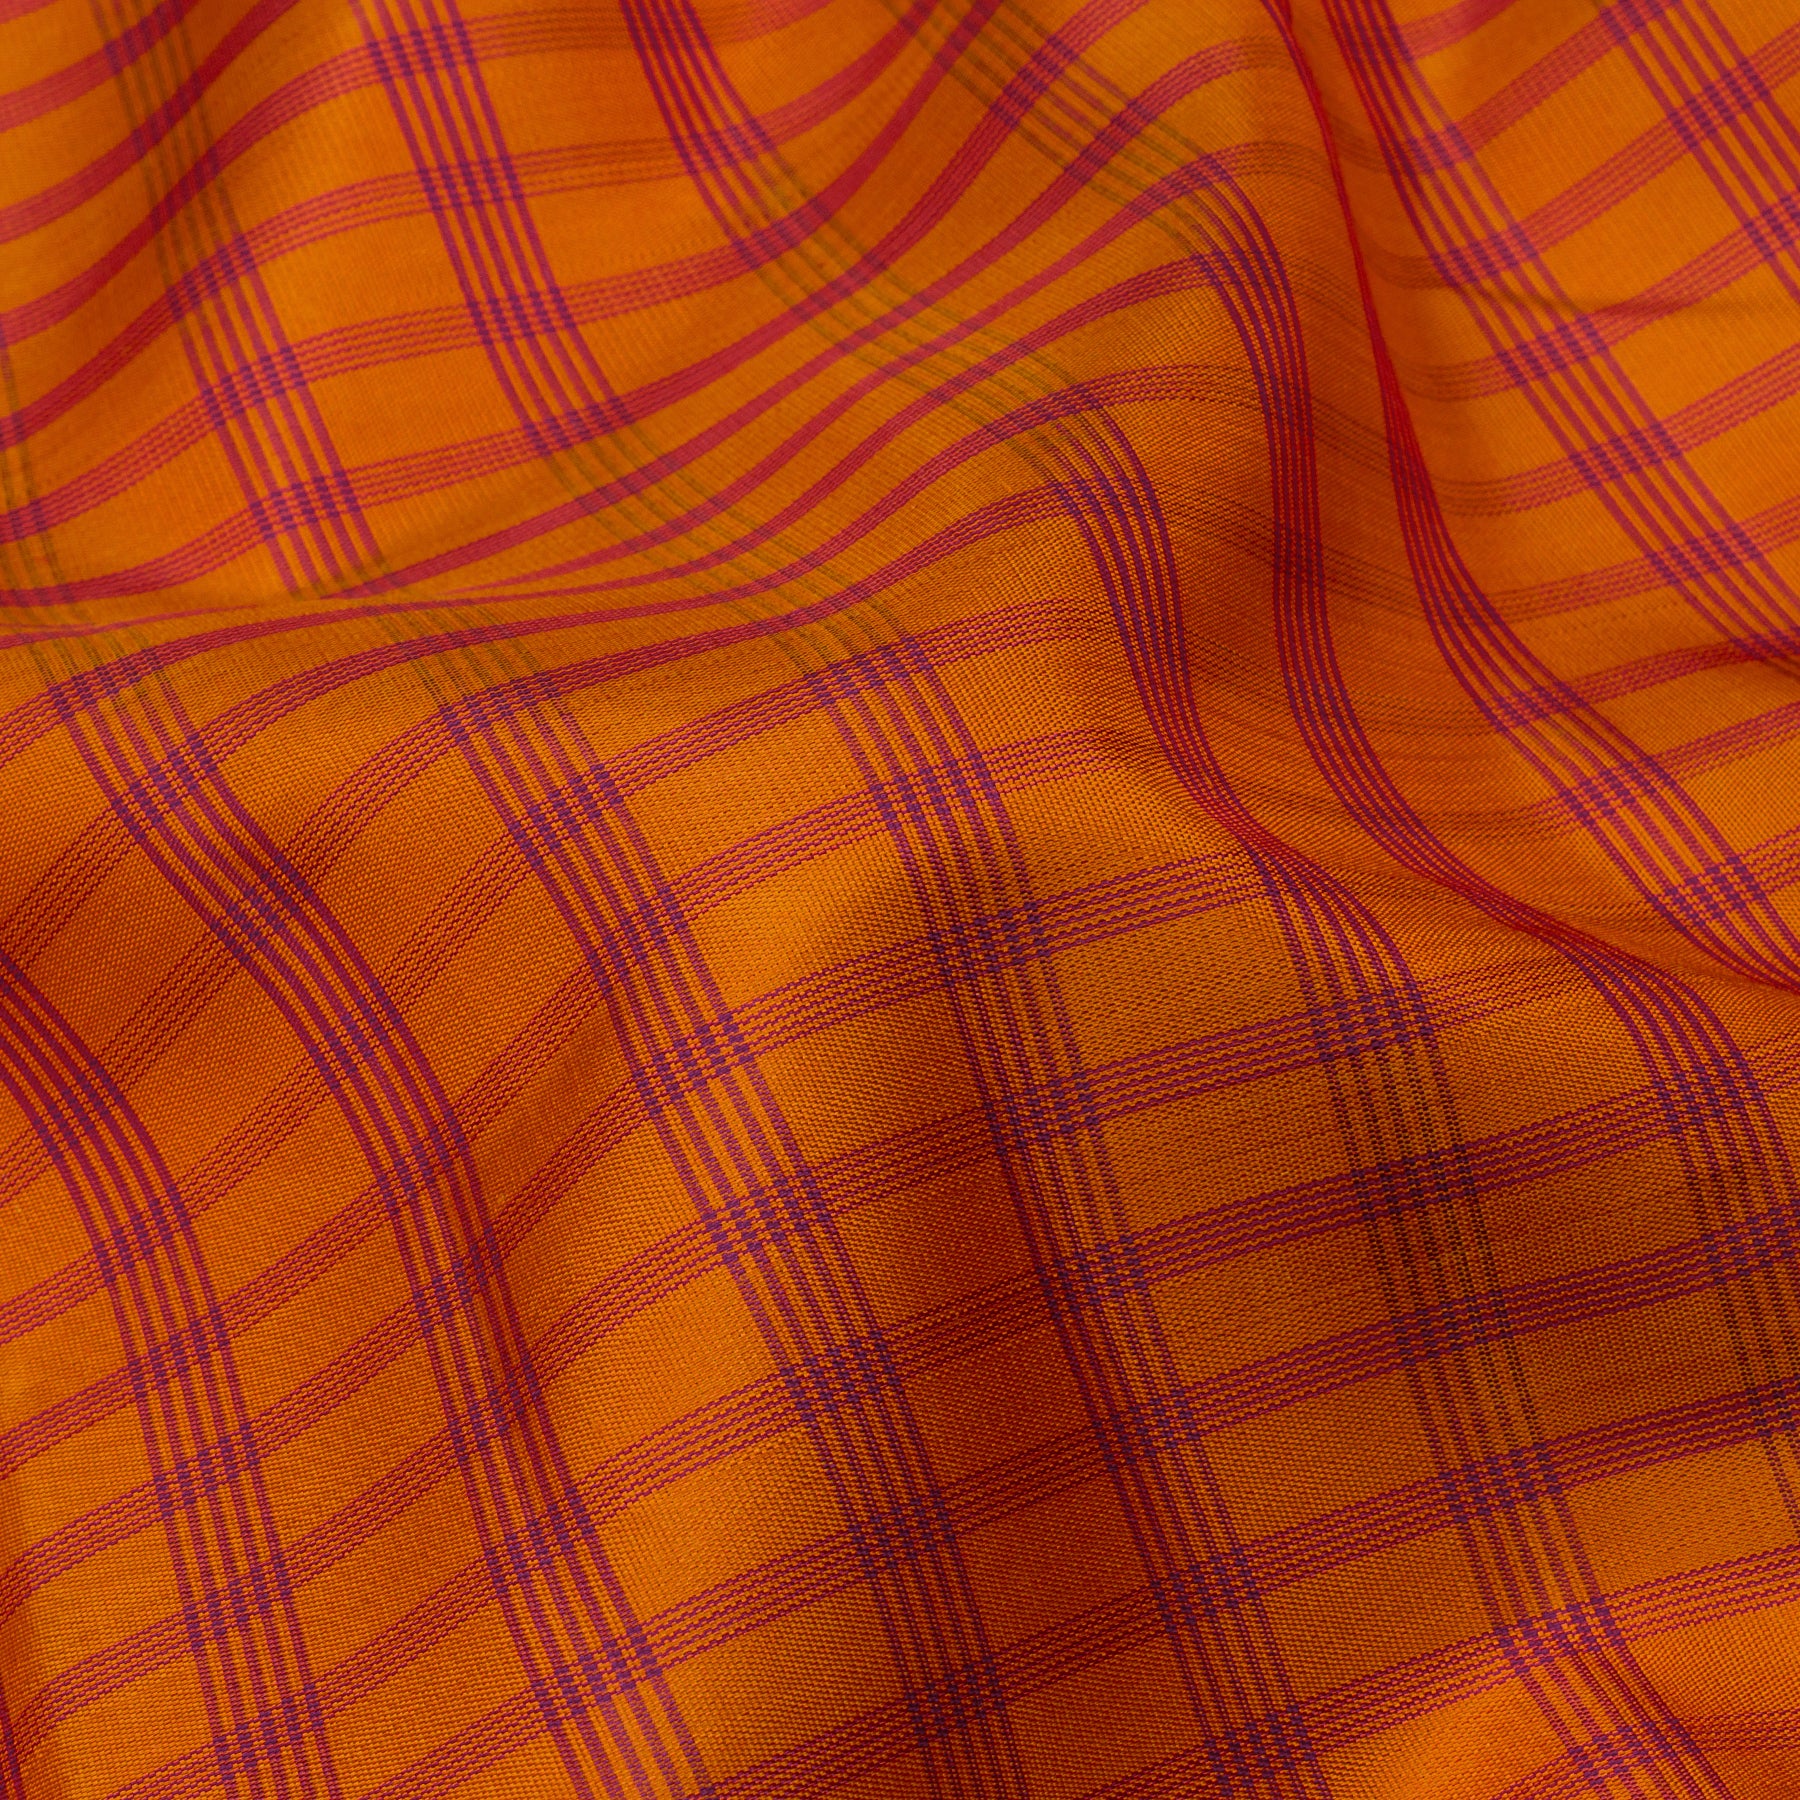 Kanakavalli Kanjivaram Silk Sari 23-595-HS001-10522 - Fabric View